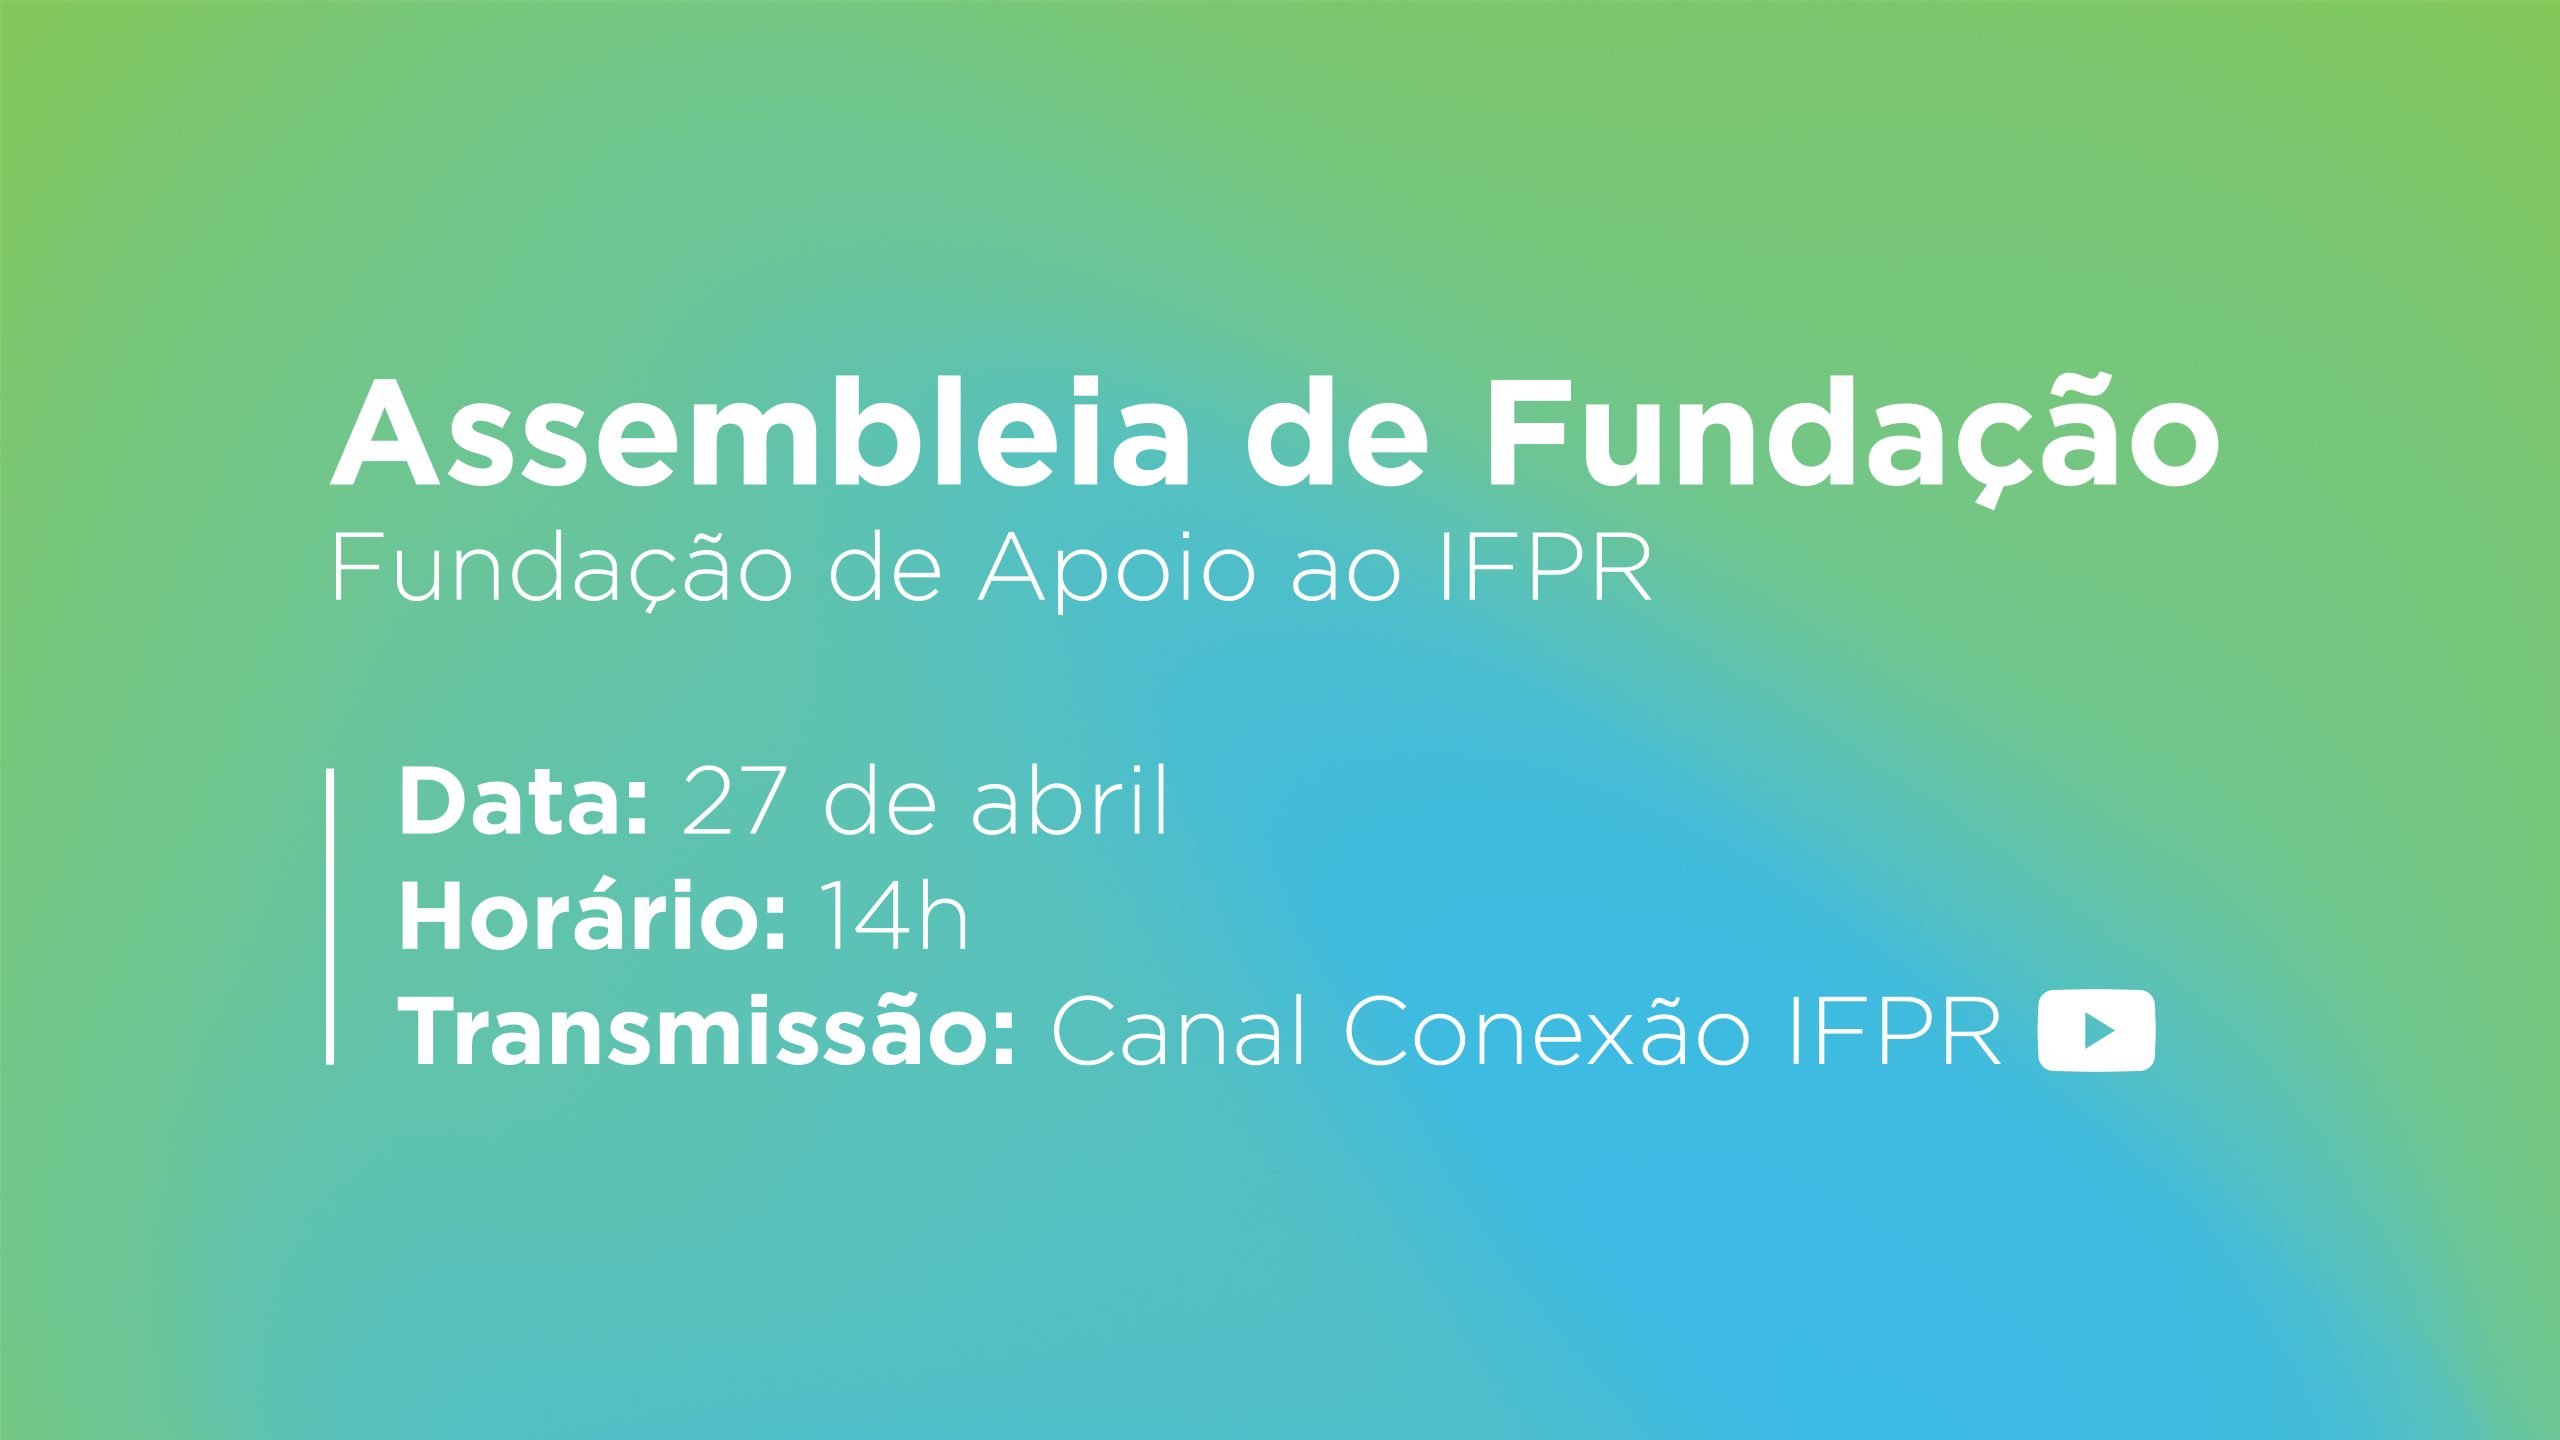 Assembleia fundação própria do IFPR